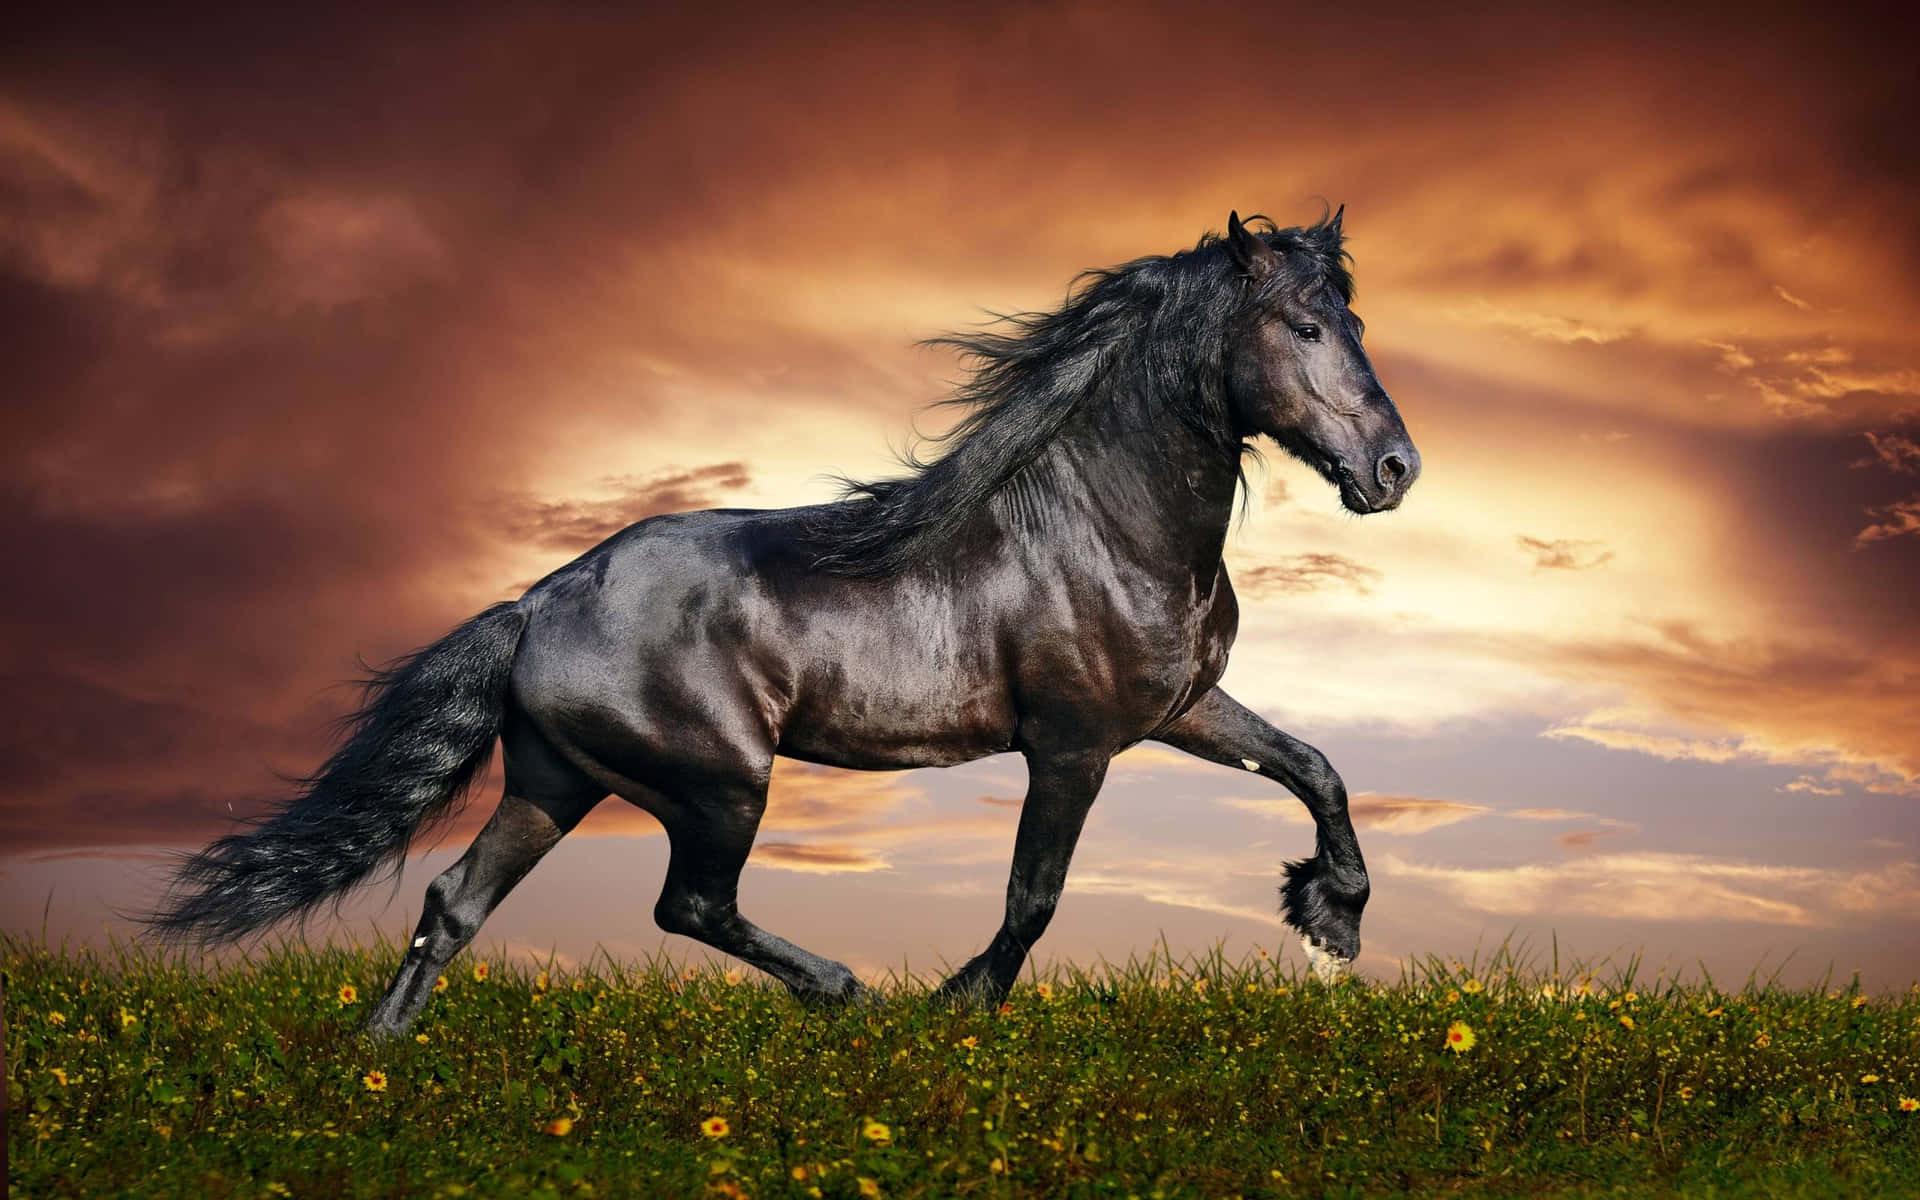 Einmutiges Und Temperamentvolles Pferd, Das Stolz Von Einer Wunderschönen Blumenlandschaft Umgeben Ist. Wallpaper